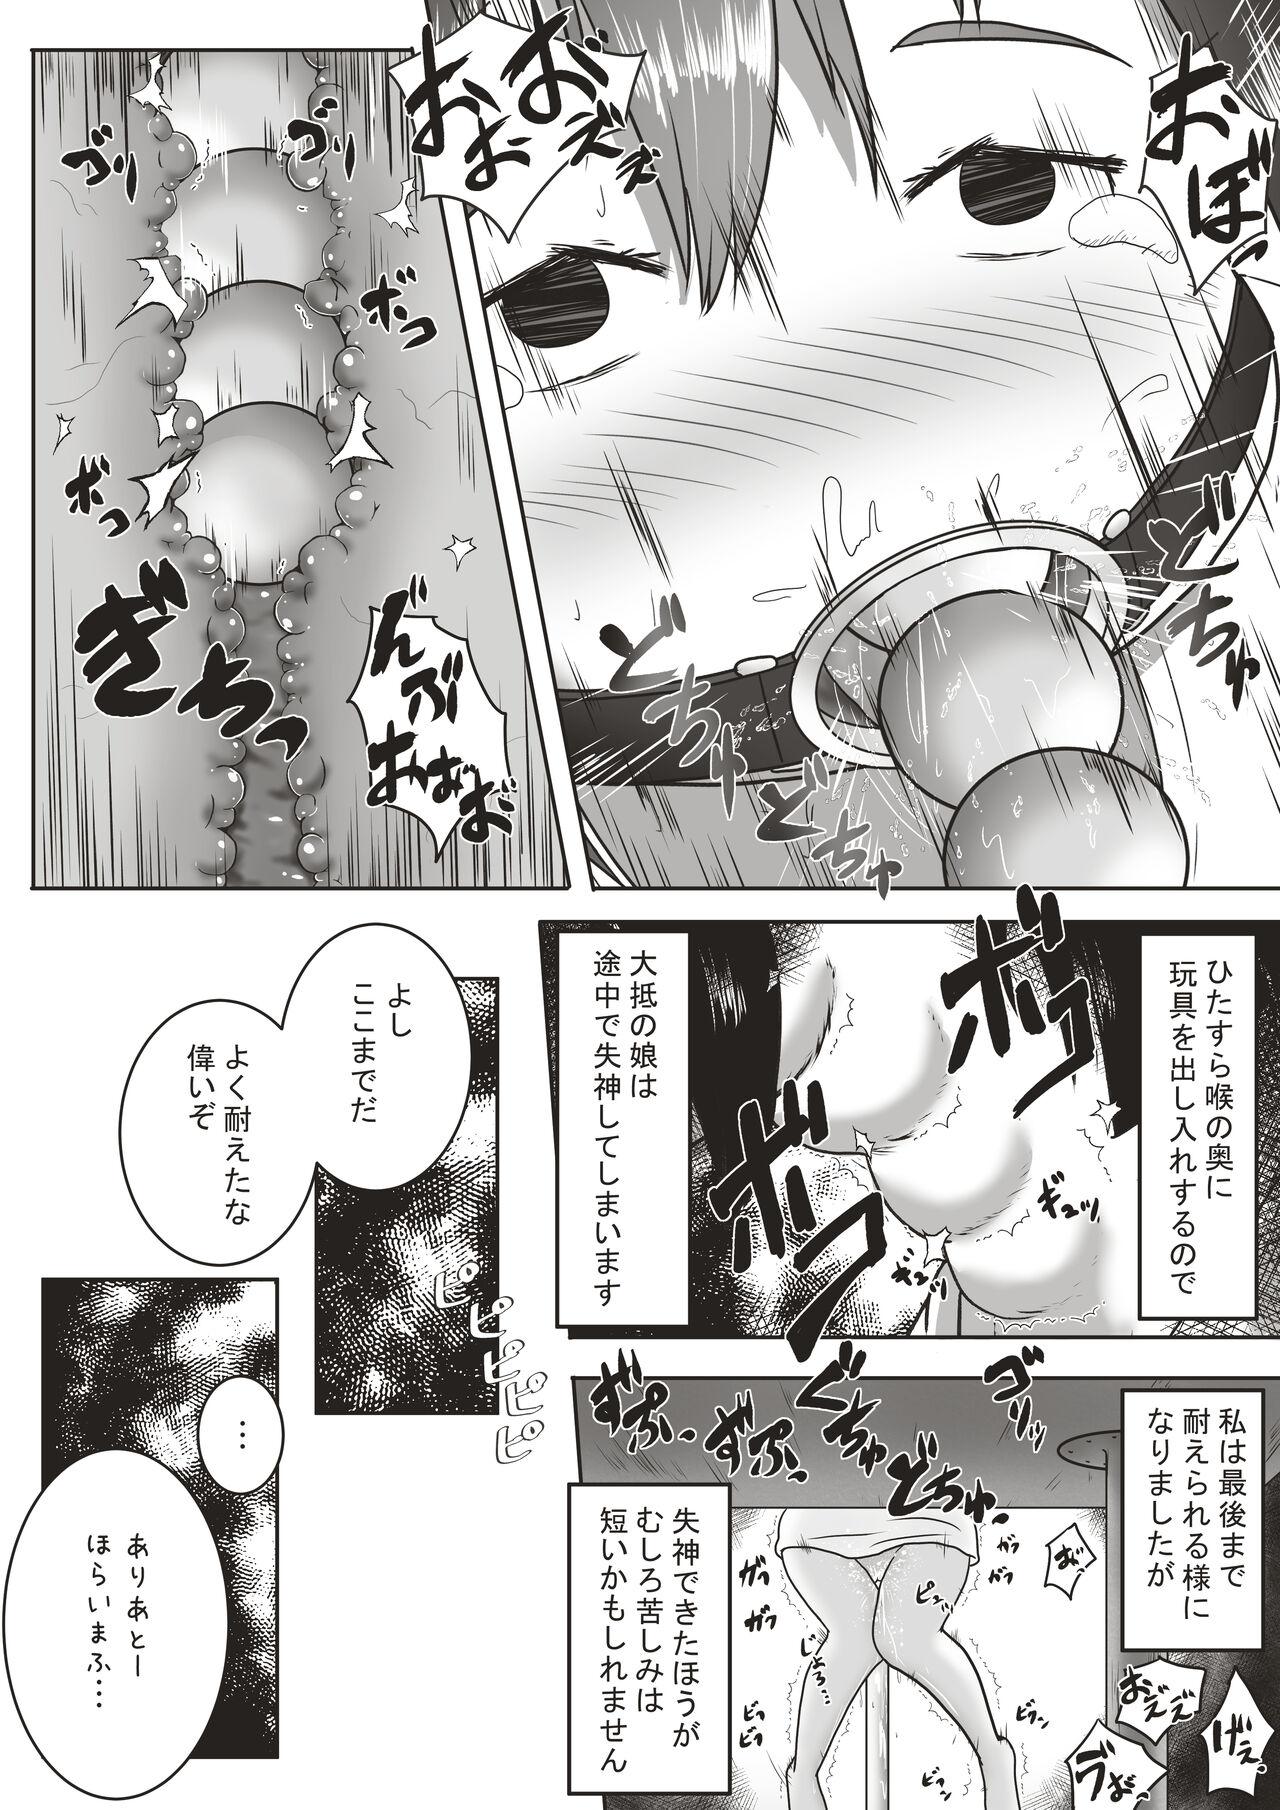 Cosplay Kōhaku-sōna ko o nodo oku shasei sen'yō no kuchi benki ni chōkyō suru ohanashi - Original Bang Bros - Page 8